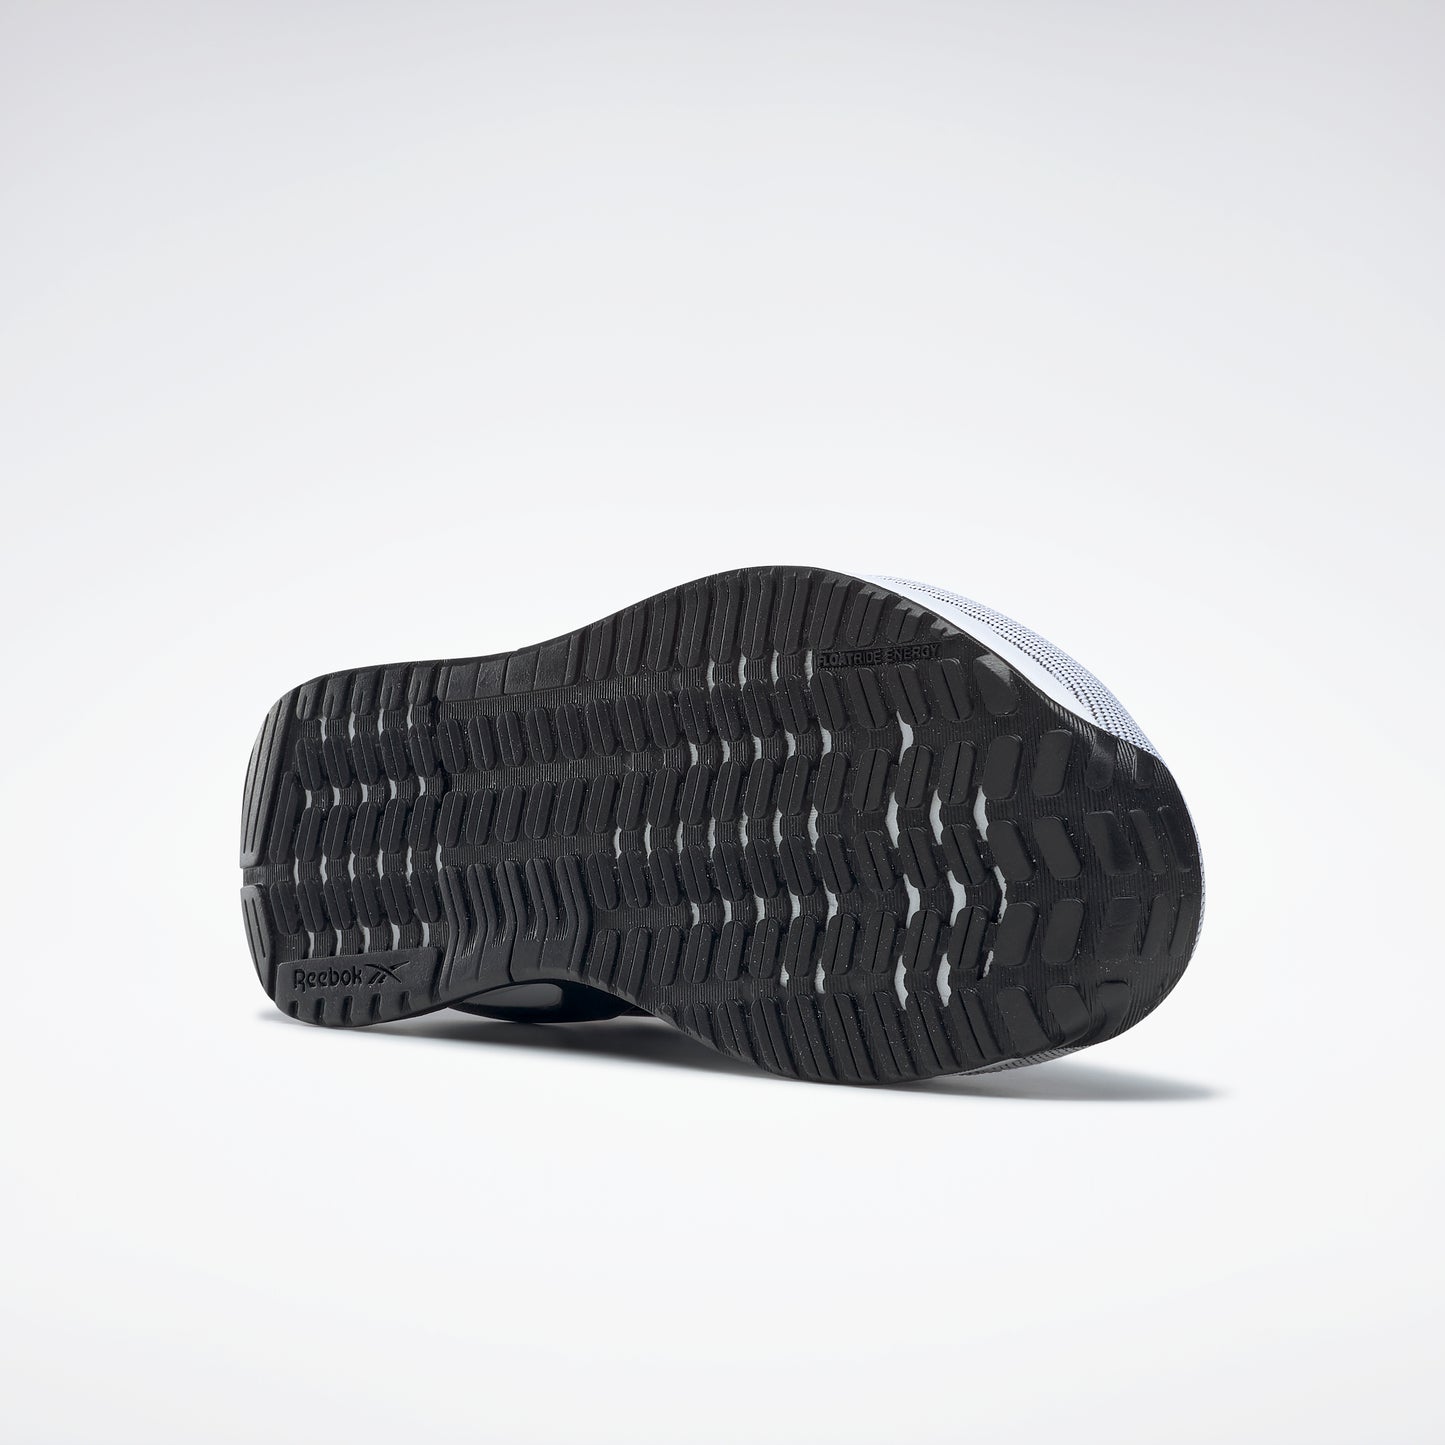 Reebok Footwear Men Reebok Nano X2 Shoes Cblack/Ftwwht/Purgry